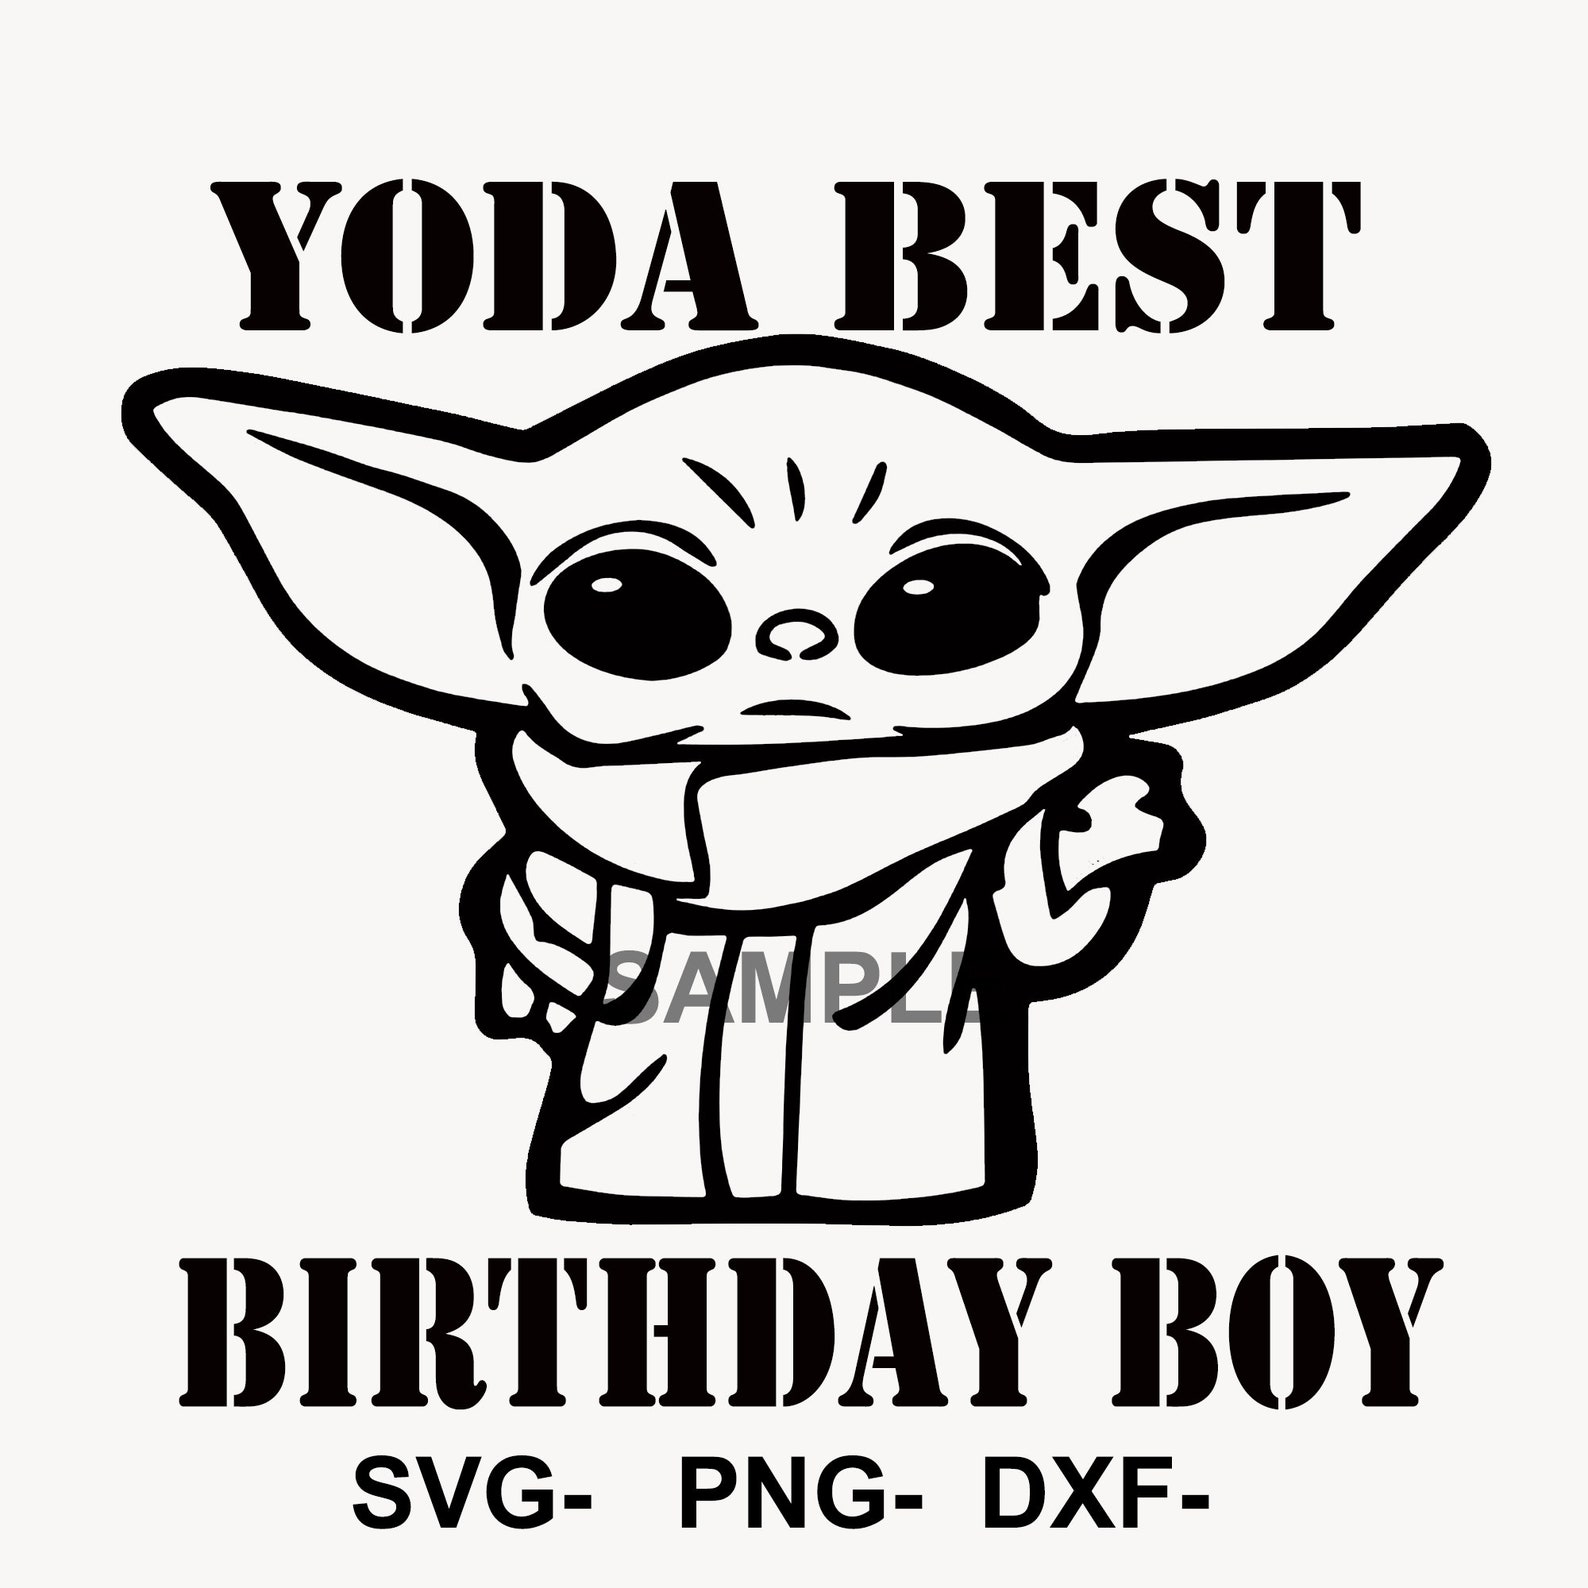 Yoda Best BIRTHDAY BOY Yoda Best JPG Baby Yoda Birthday Boy - Etsy